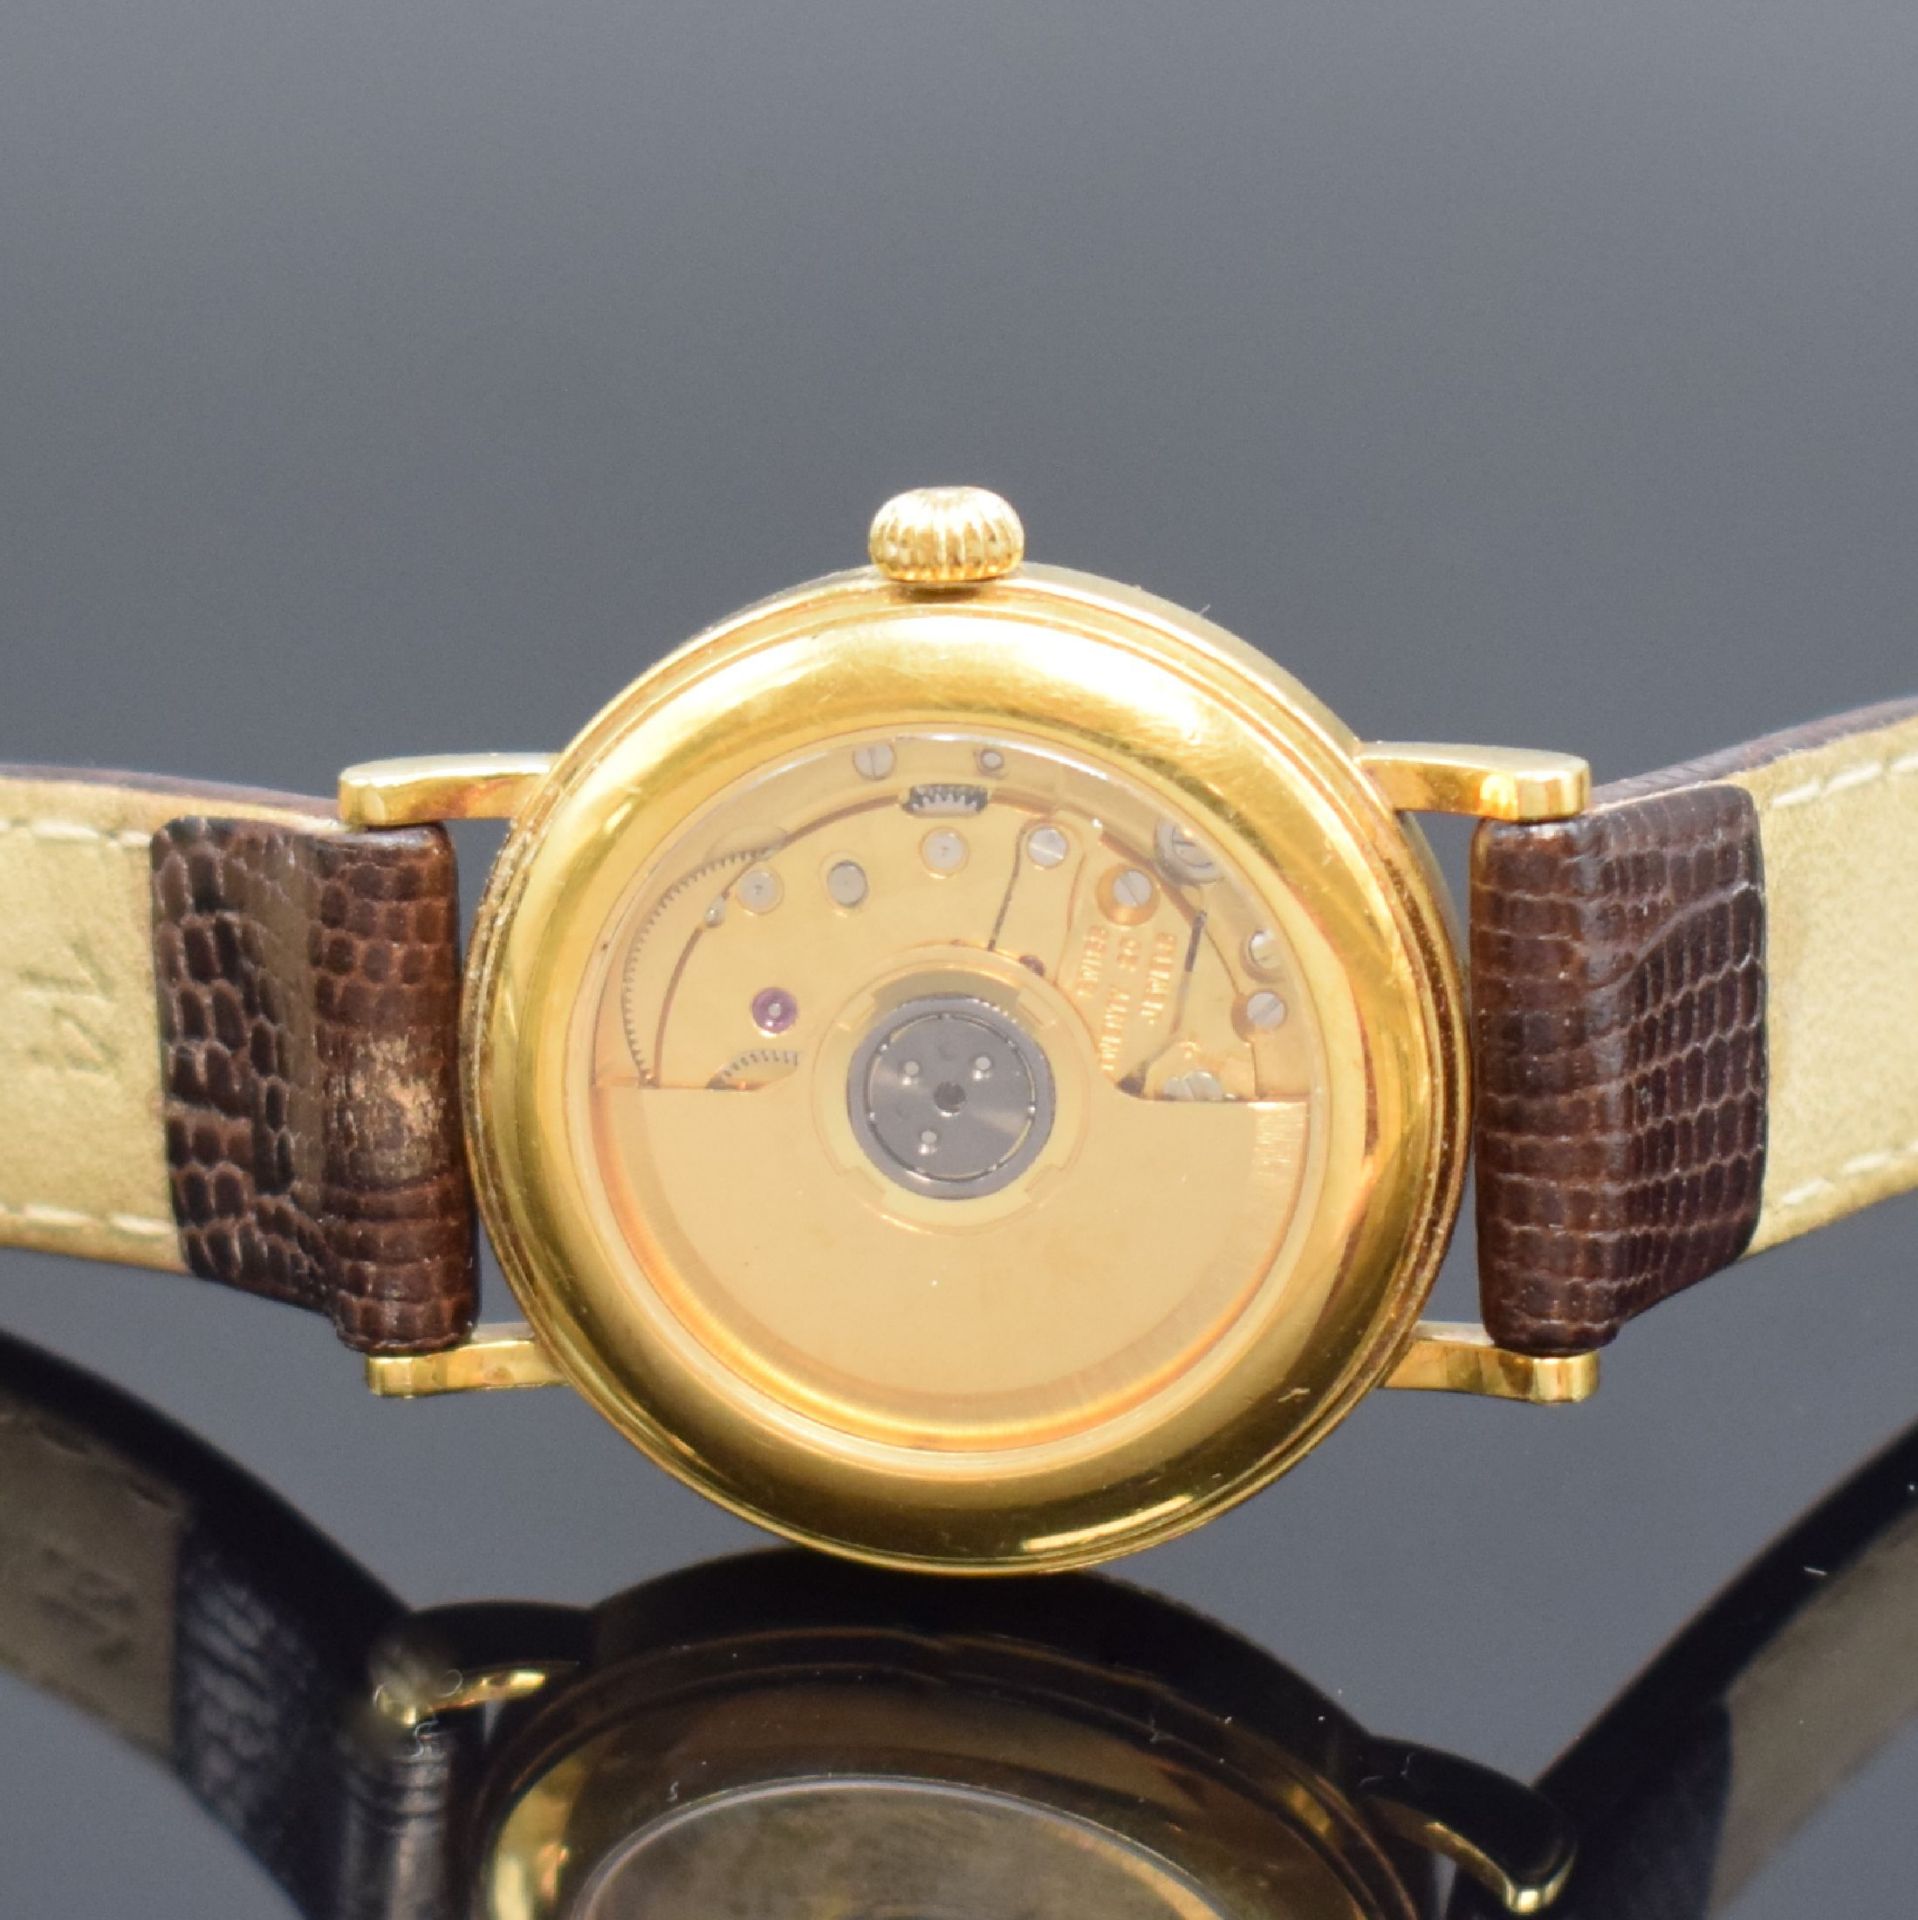 JEAN MARCEL Armbanduhr in GG 750/000, Schweiz um 2000, - Bild 4 aus 5